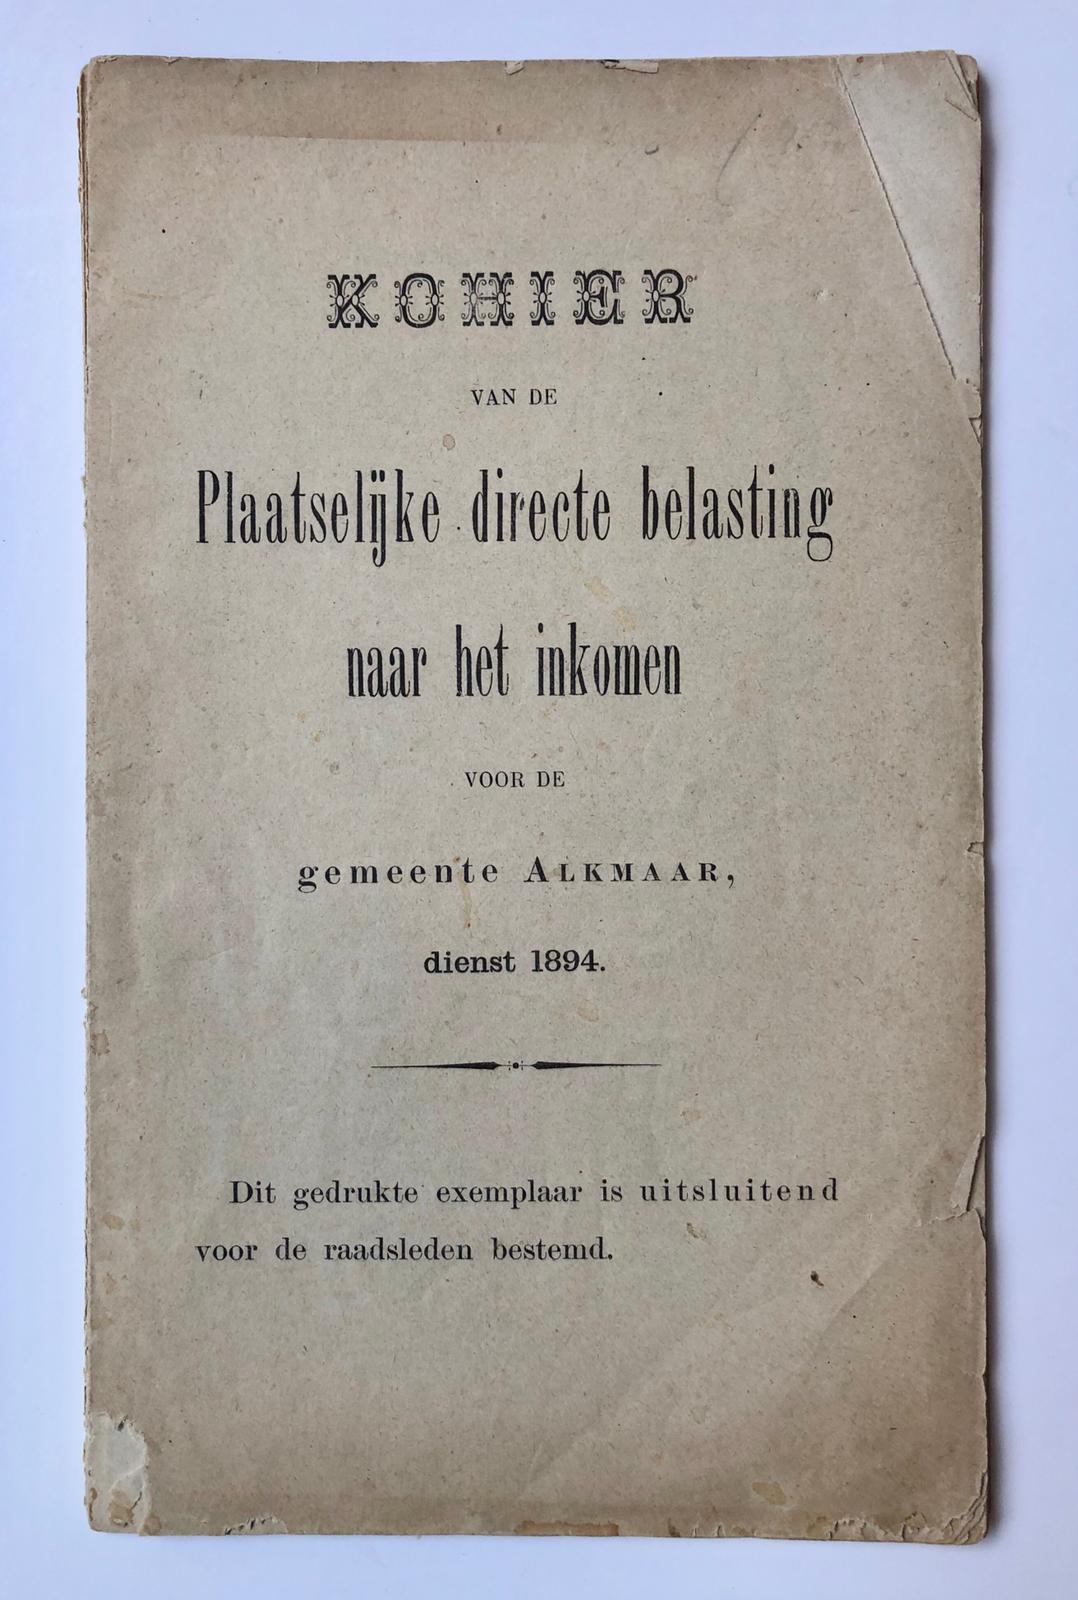  - [Printed publication, income tax, 1894] Kohier van de plaatselijke directe belasting naar het inkomen voor de gemeente Alkmaar. Dienst 1894. Gedrukte boekje van 42 pag. 'uitsluitend voor de raadsleden bestemd'.